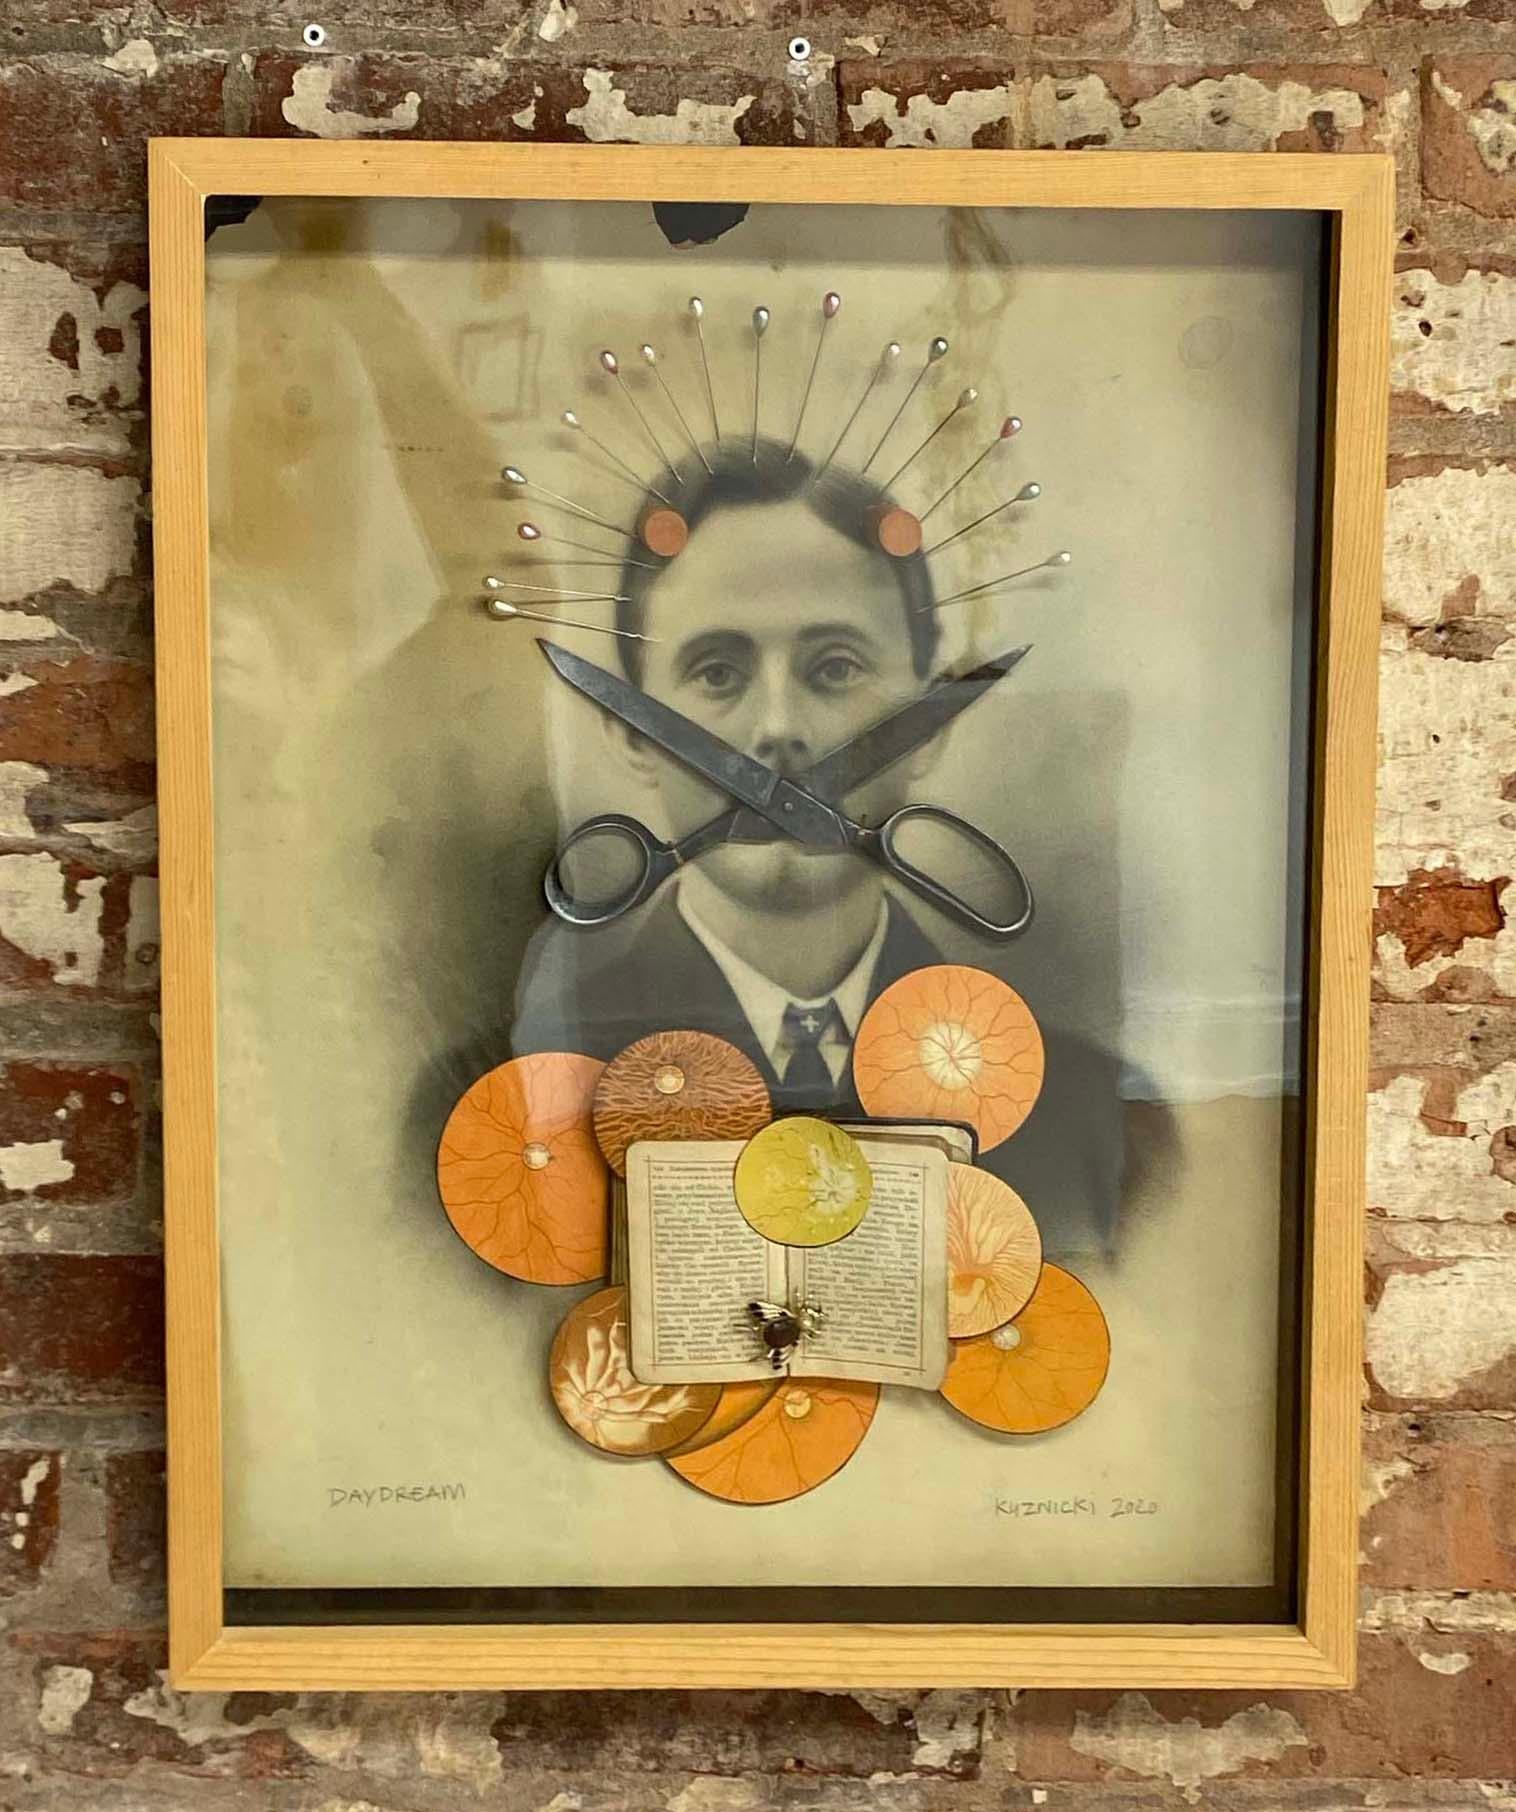 Collage unique sur toile de Philip Kuznicki, issu de l'exposition Spirit. Livré dans son cadre d'origine.
Né à Dunkerque, NY, Kuznicki a commencé sa carrière en travaillant pour des artistes tels que Zaha Hadid et Ulysses Pagliari. Ses œuvres font